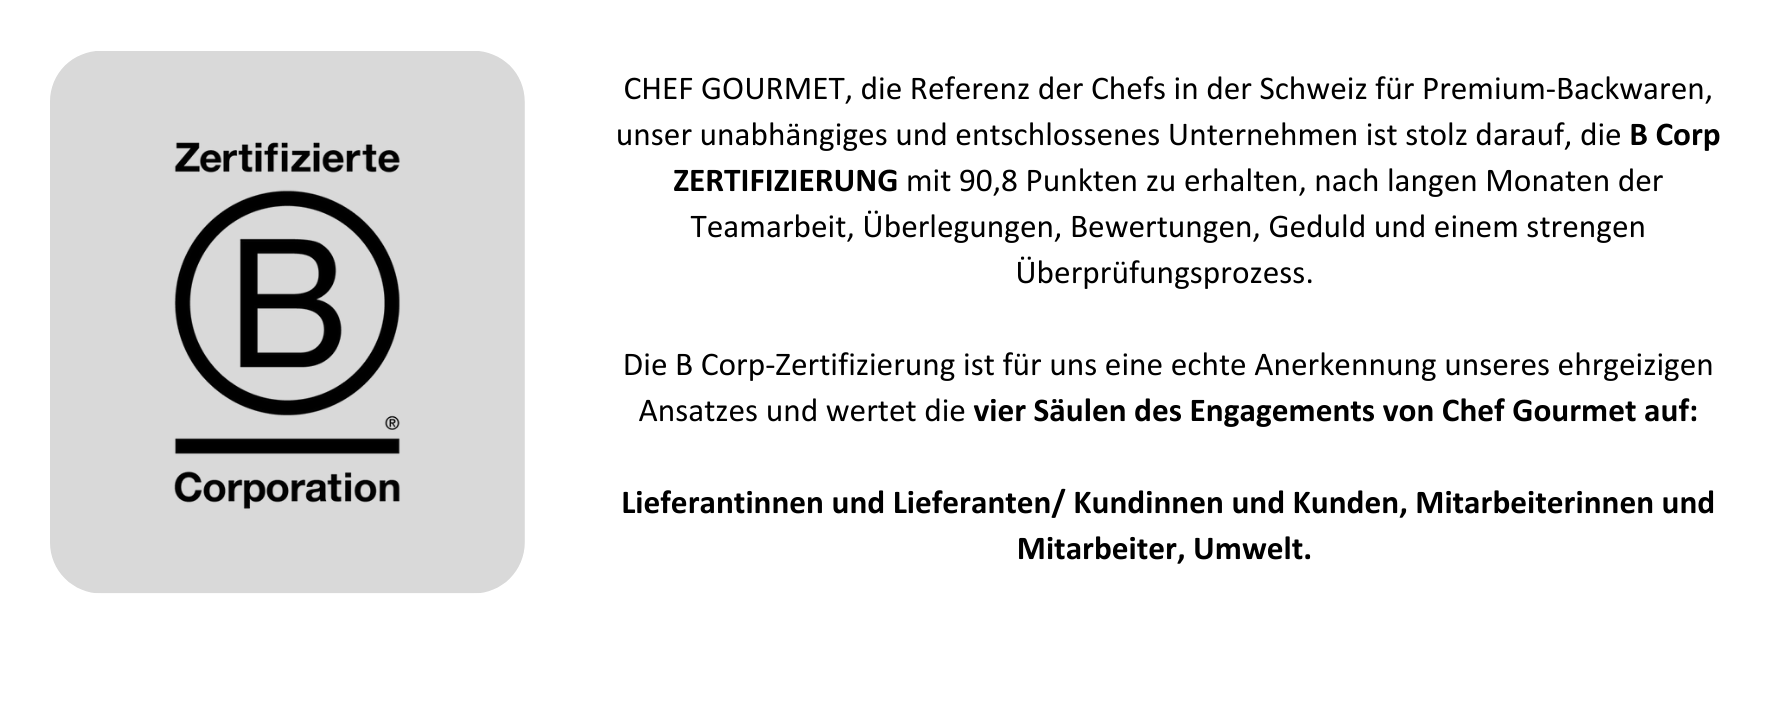 B Corp ZERTIFIZIERUNG Chef Gourmet